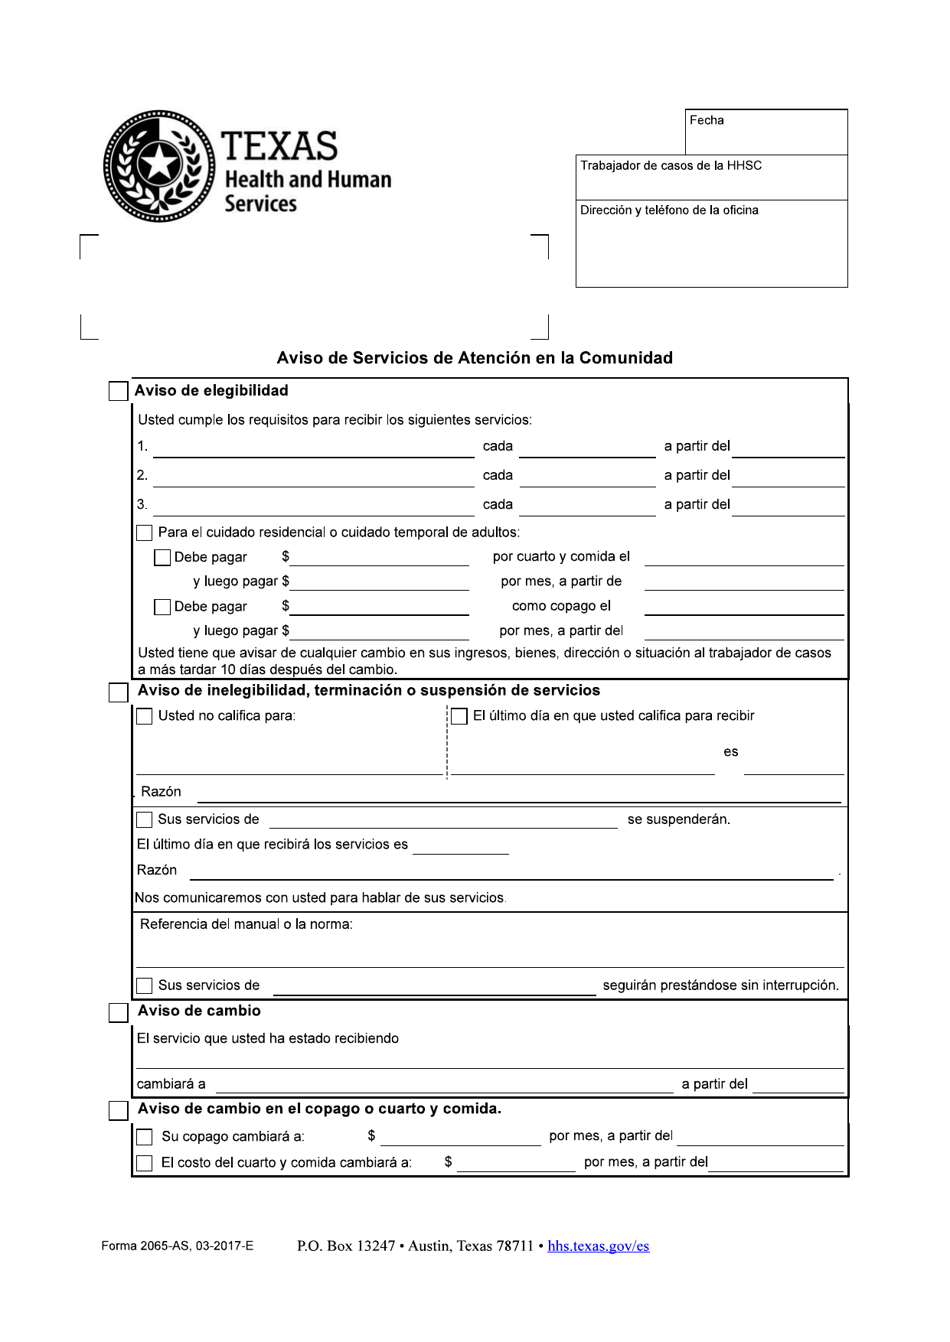 Formulario 2065-AS Aviso De Servicios De Atencion En La Comunidad - Texas (Spanish), Page 1